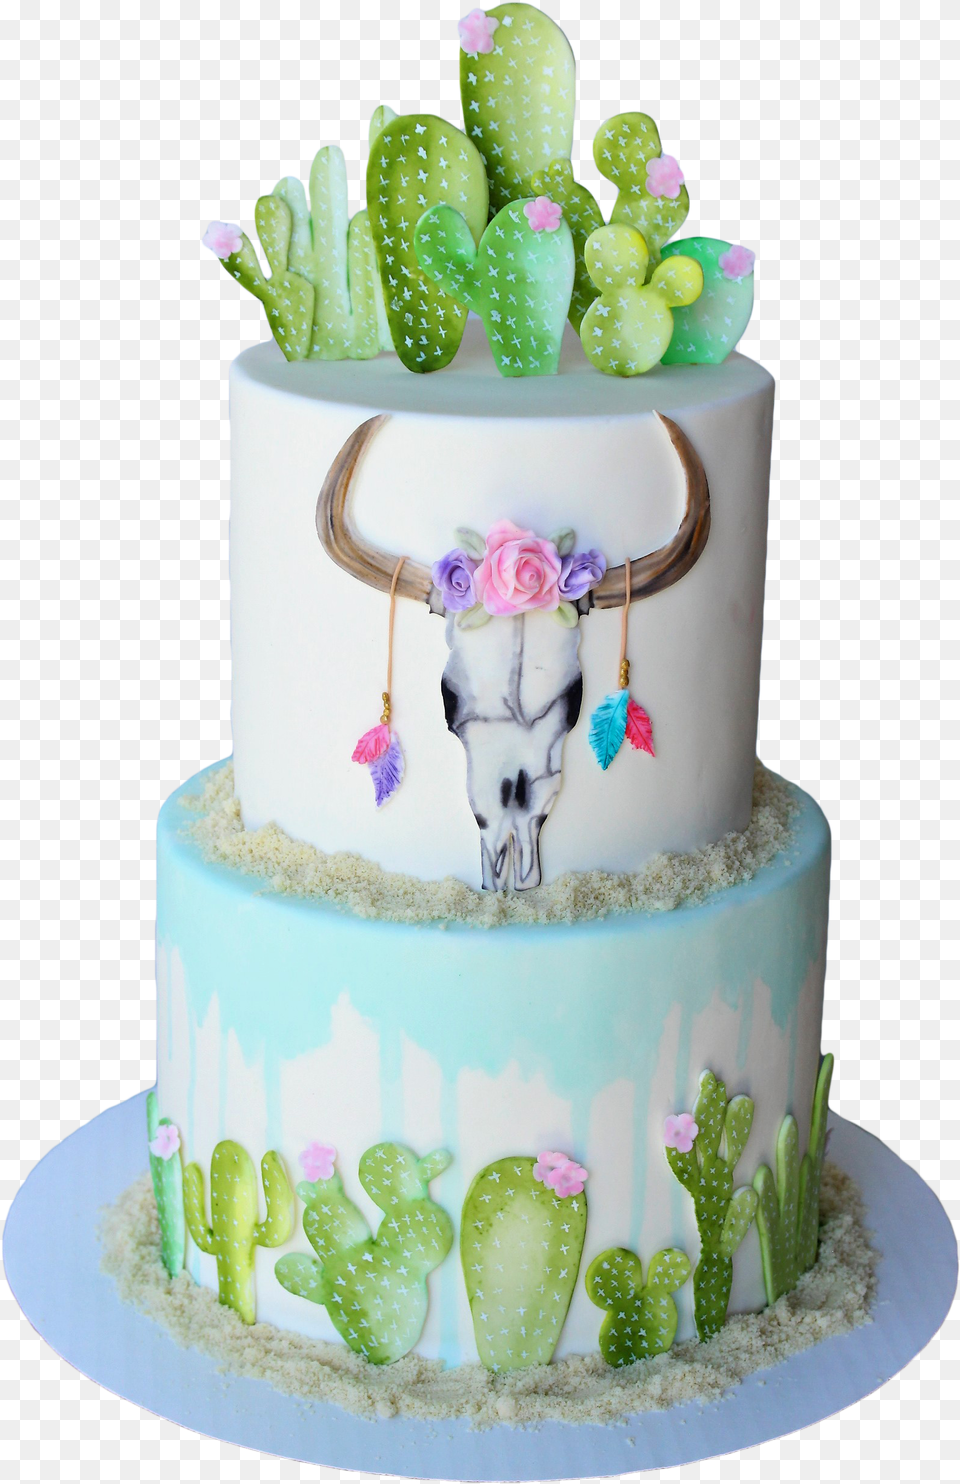 Lovely Baker Cactus Cake, Birthday Cake, Cream, Dessert, Food Png Image